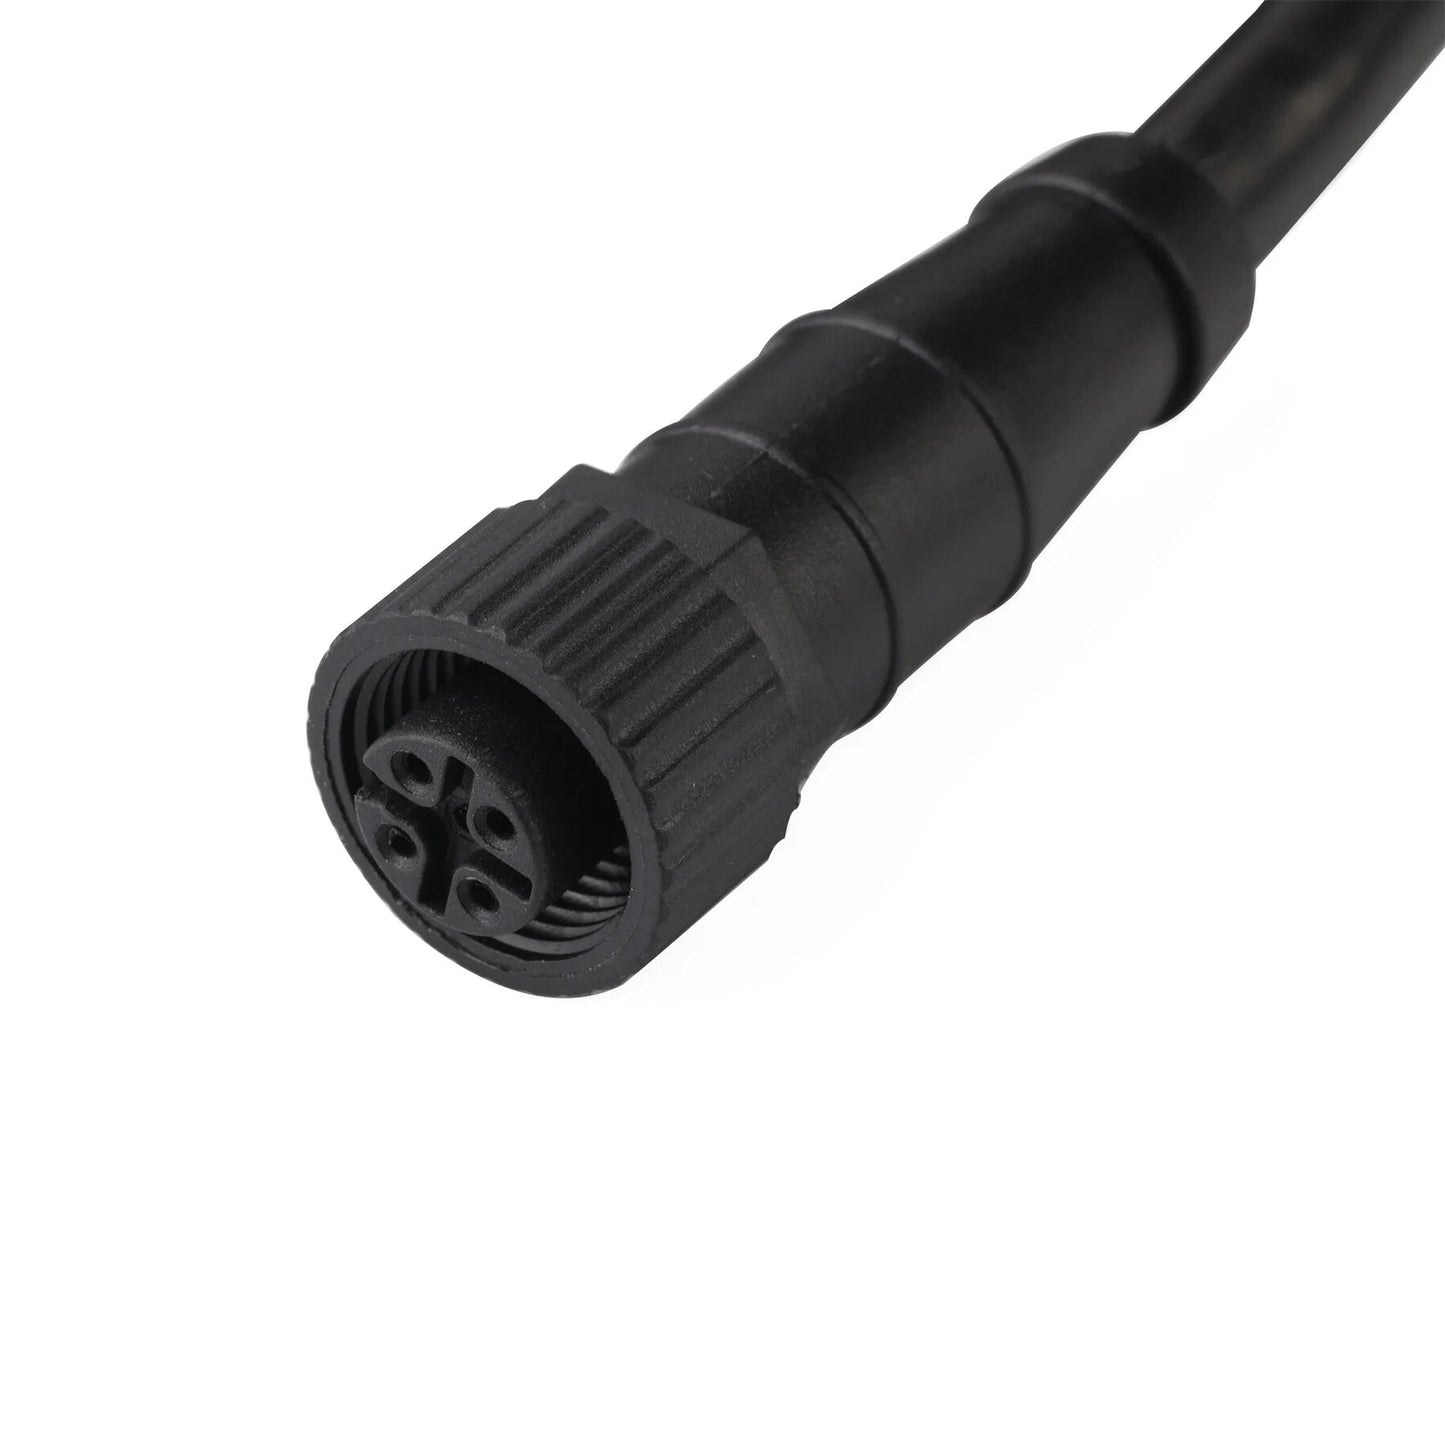 Matsutec 0.5Meter 5pin NMEA 2000 (N2K) 1/2 Meter, Backbone or Drop, Cable for Lowrance Simrad B&G Navico & Garmin